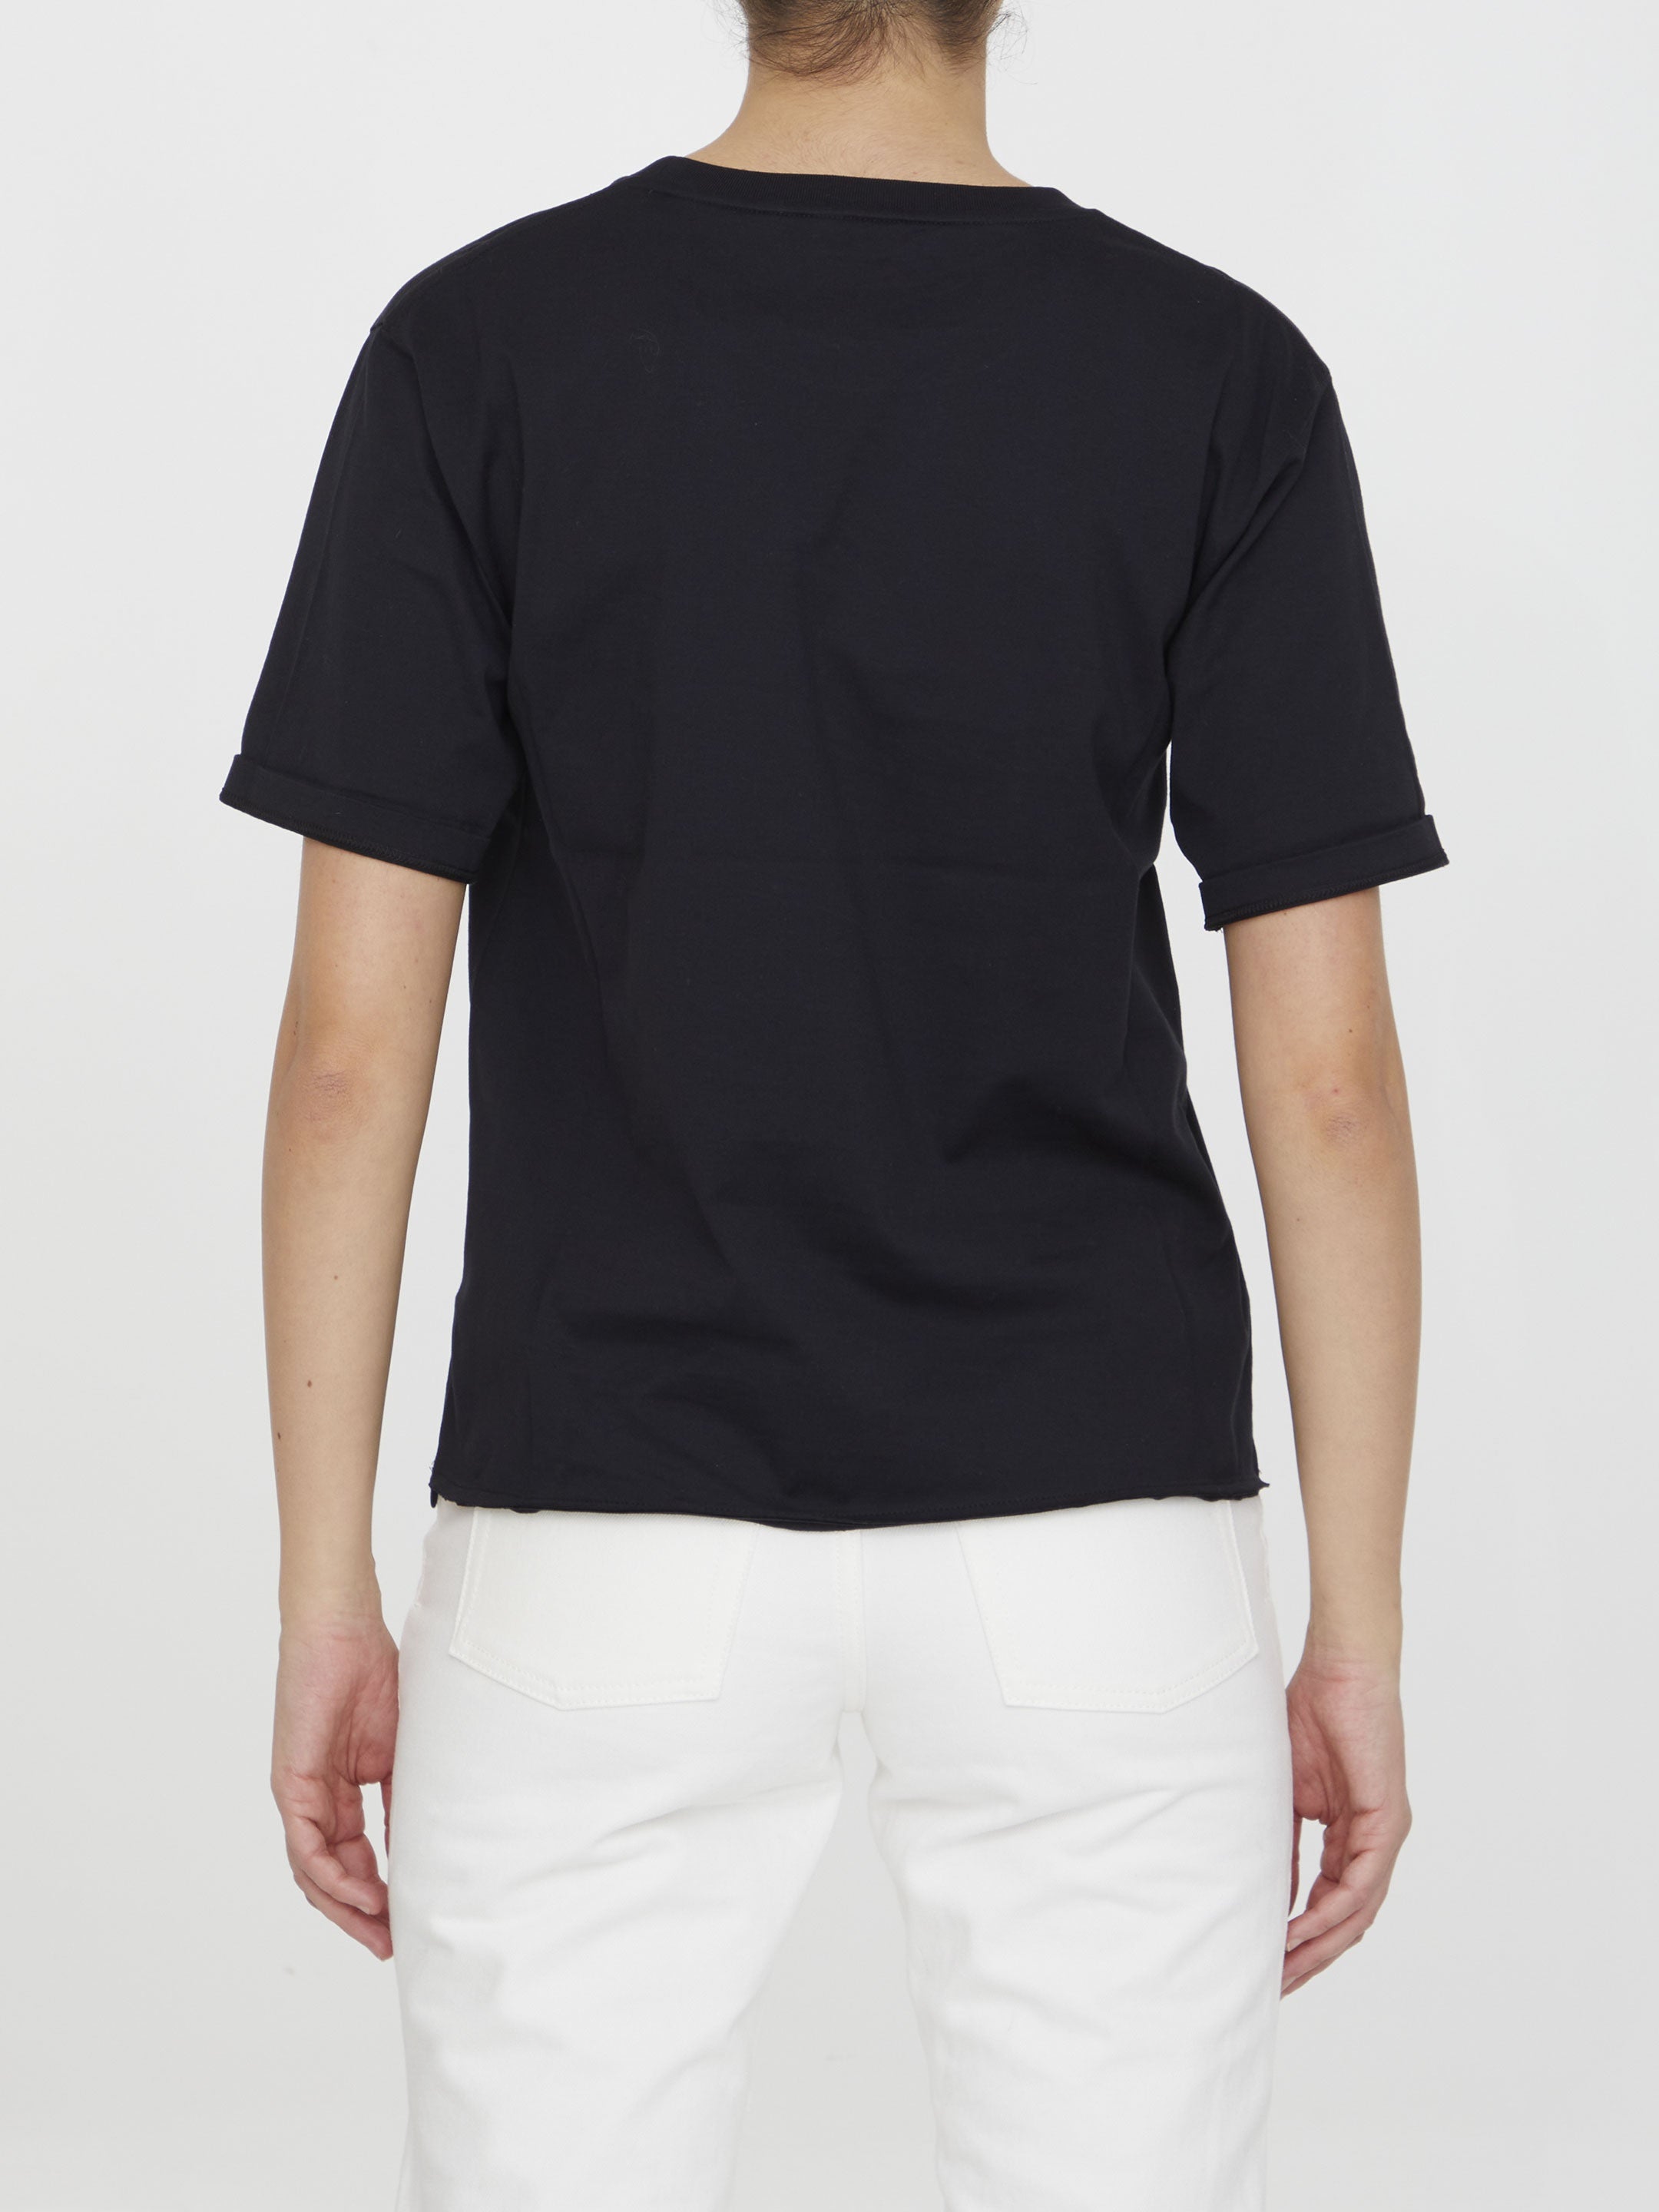 SAINT-LAURENT-OUTLET-SALE-Cotton-t-shirt-Shirts-ARCHIVE-COLLECTION-4.jpg